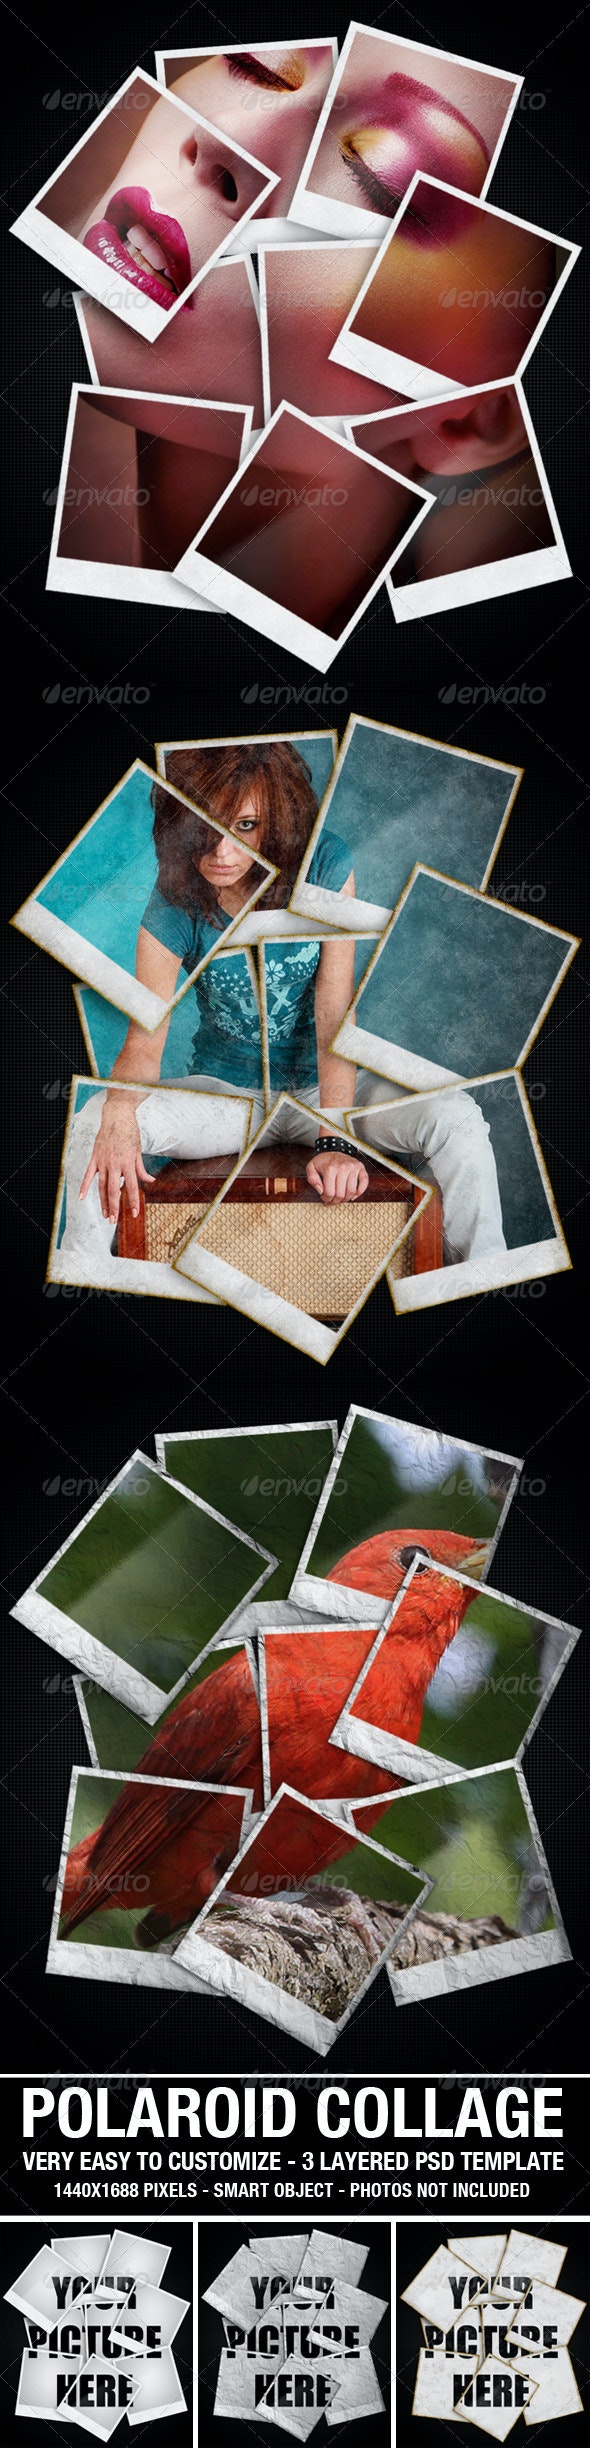 Polaroid Collage Photo Template